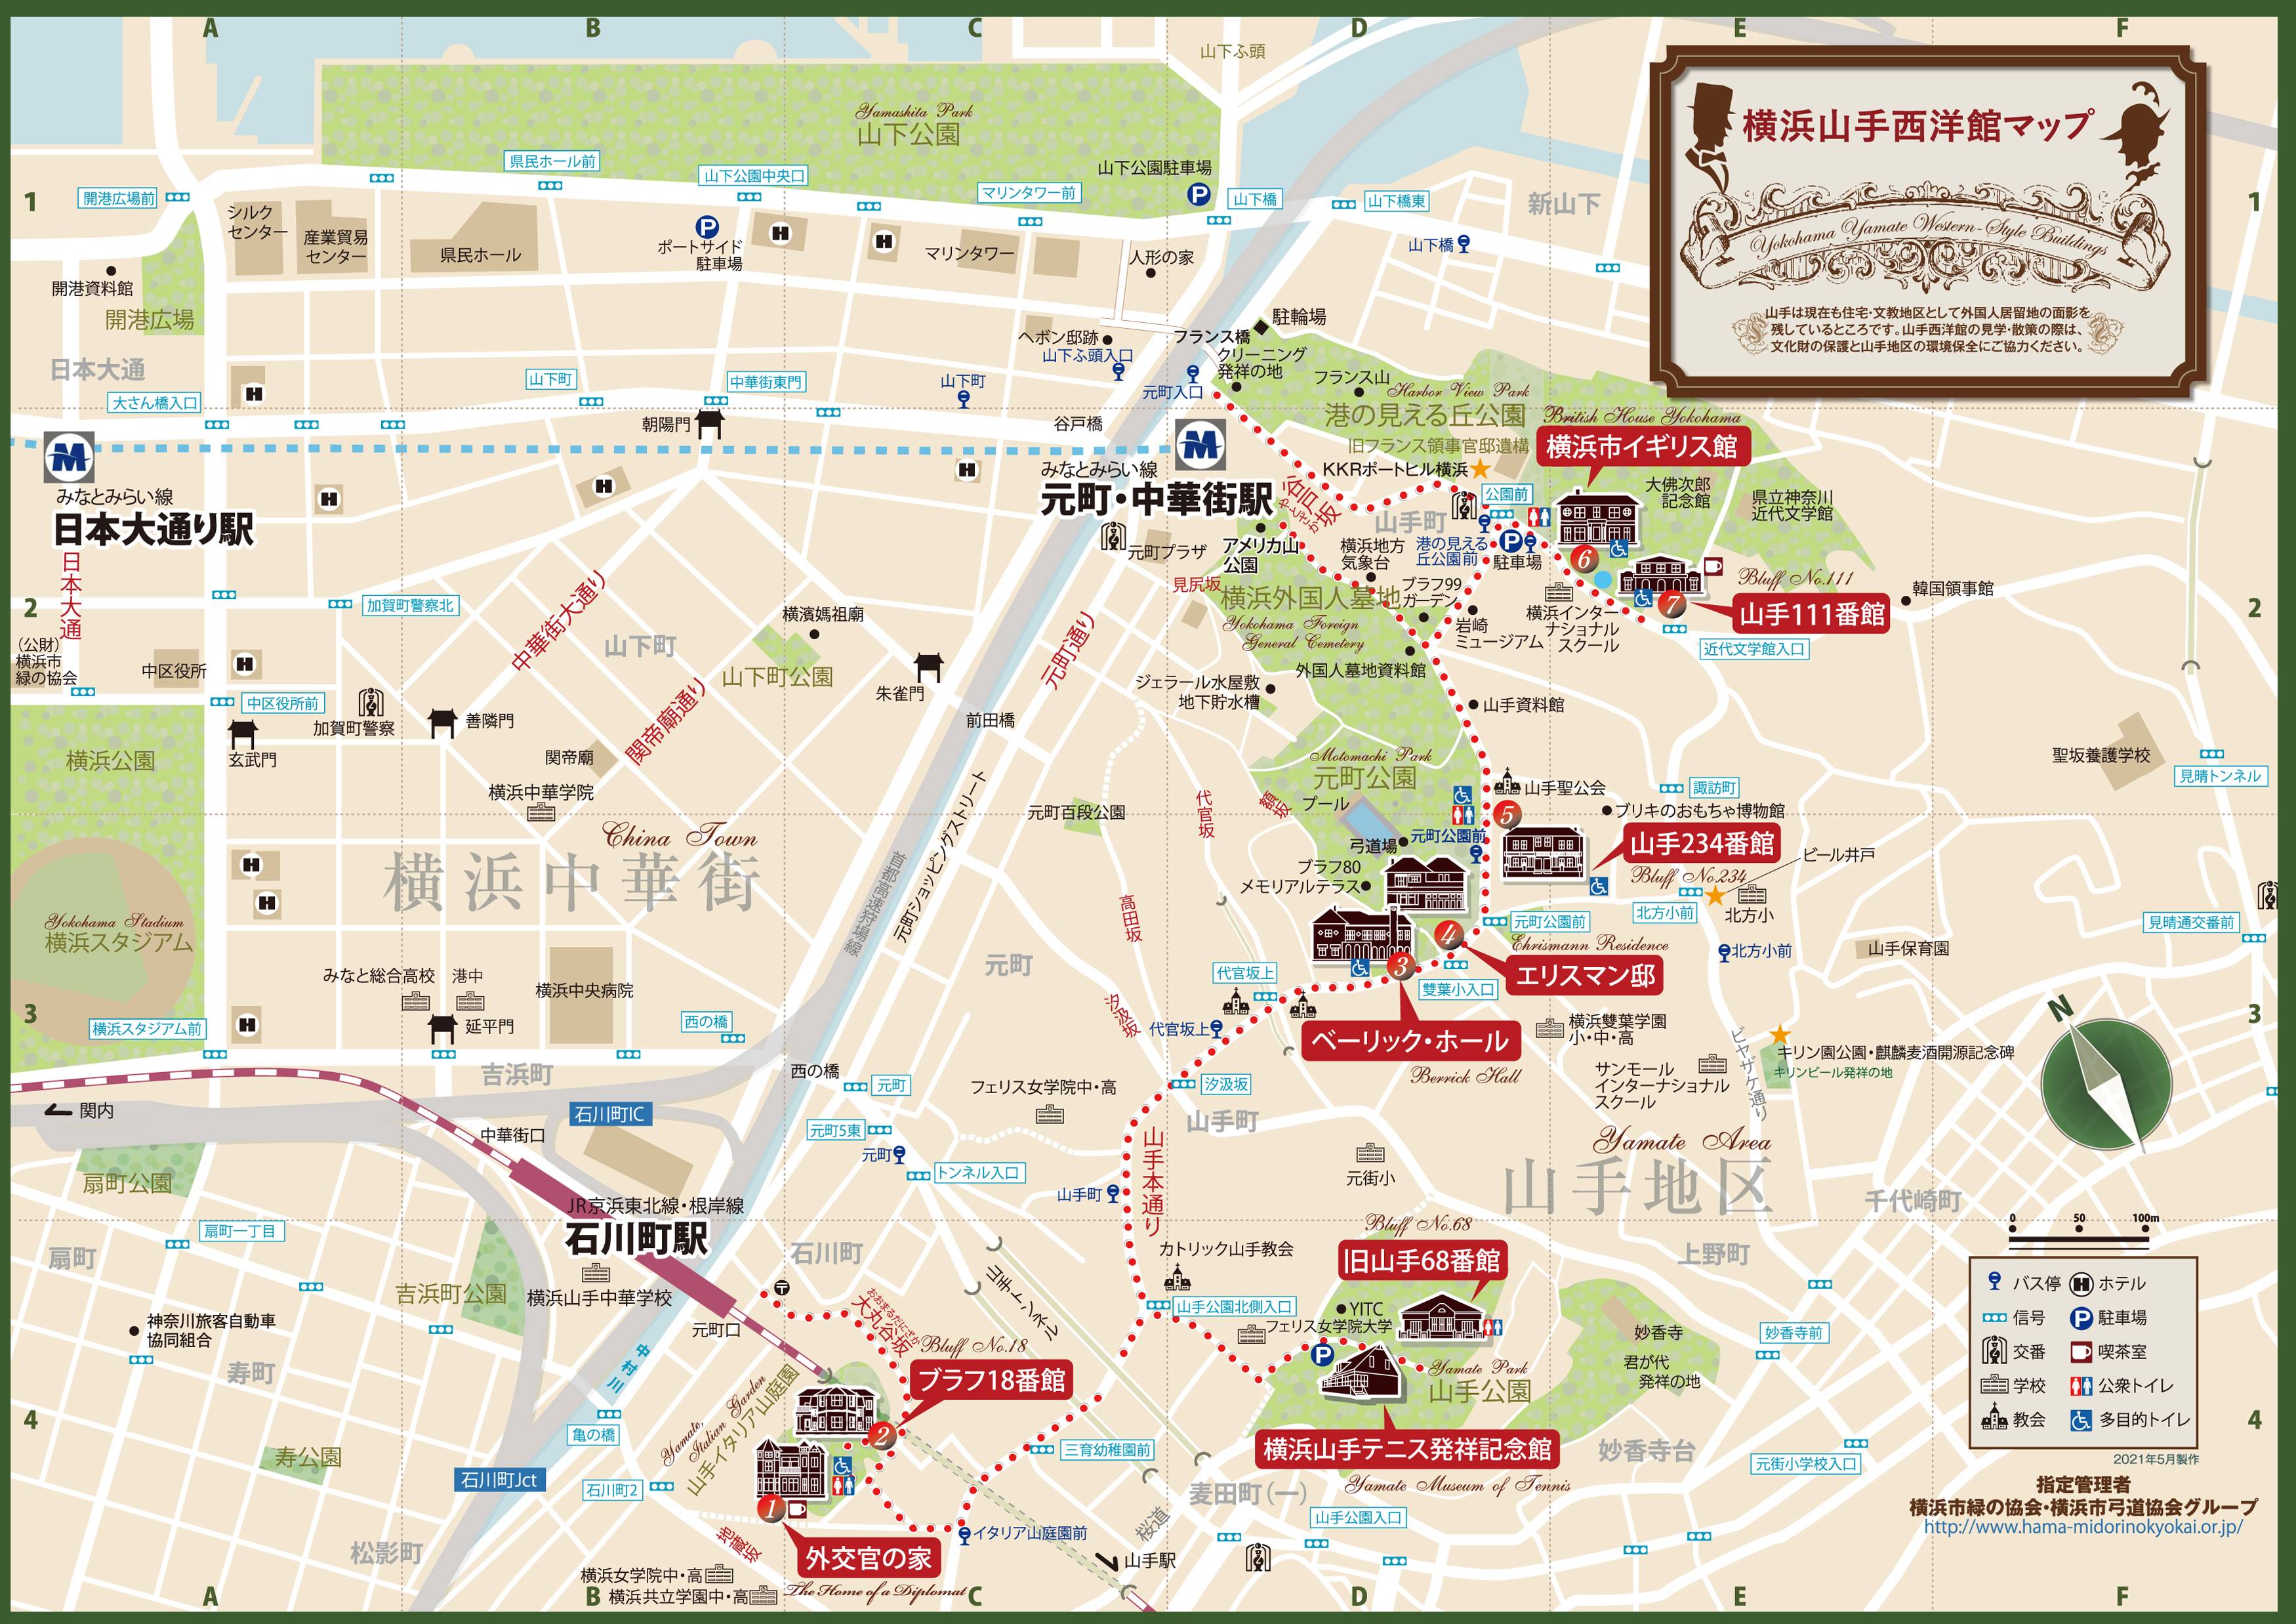 山手西洋館マップ2021.jpg